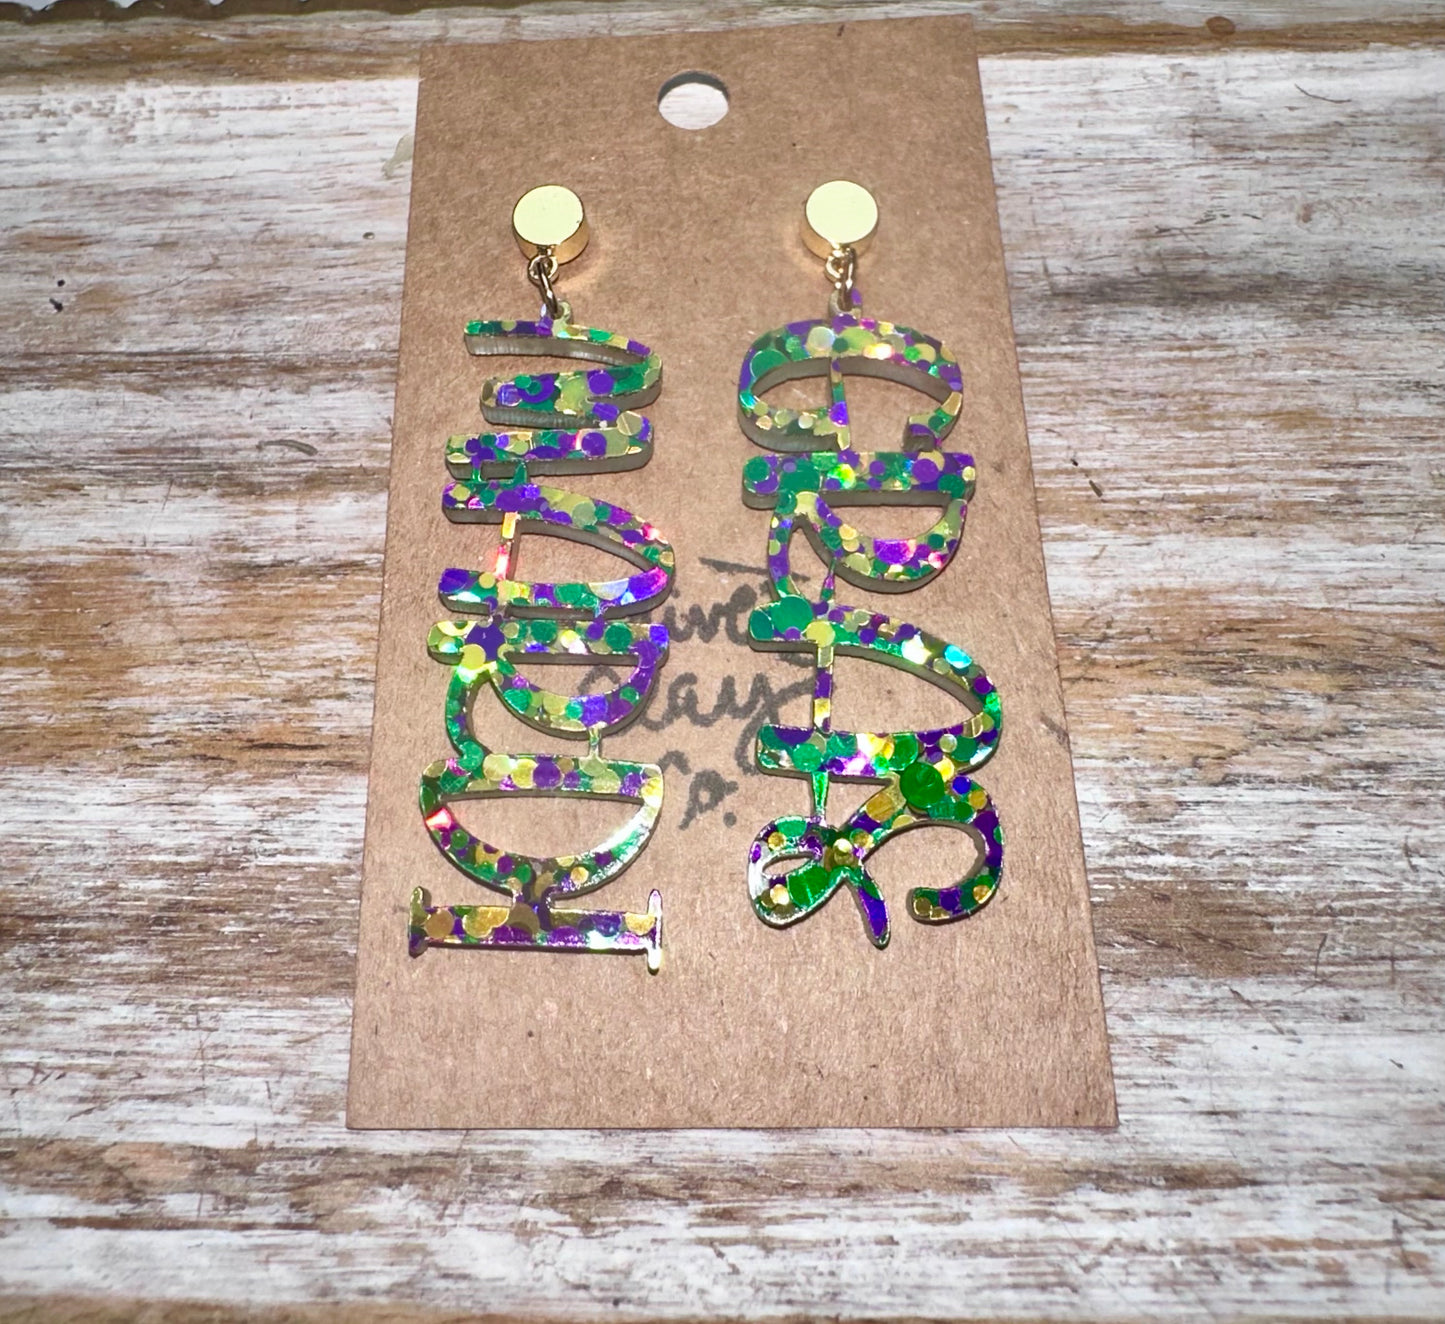 Mardi Gras earrings